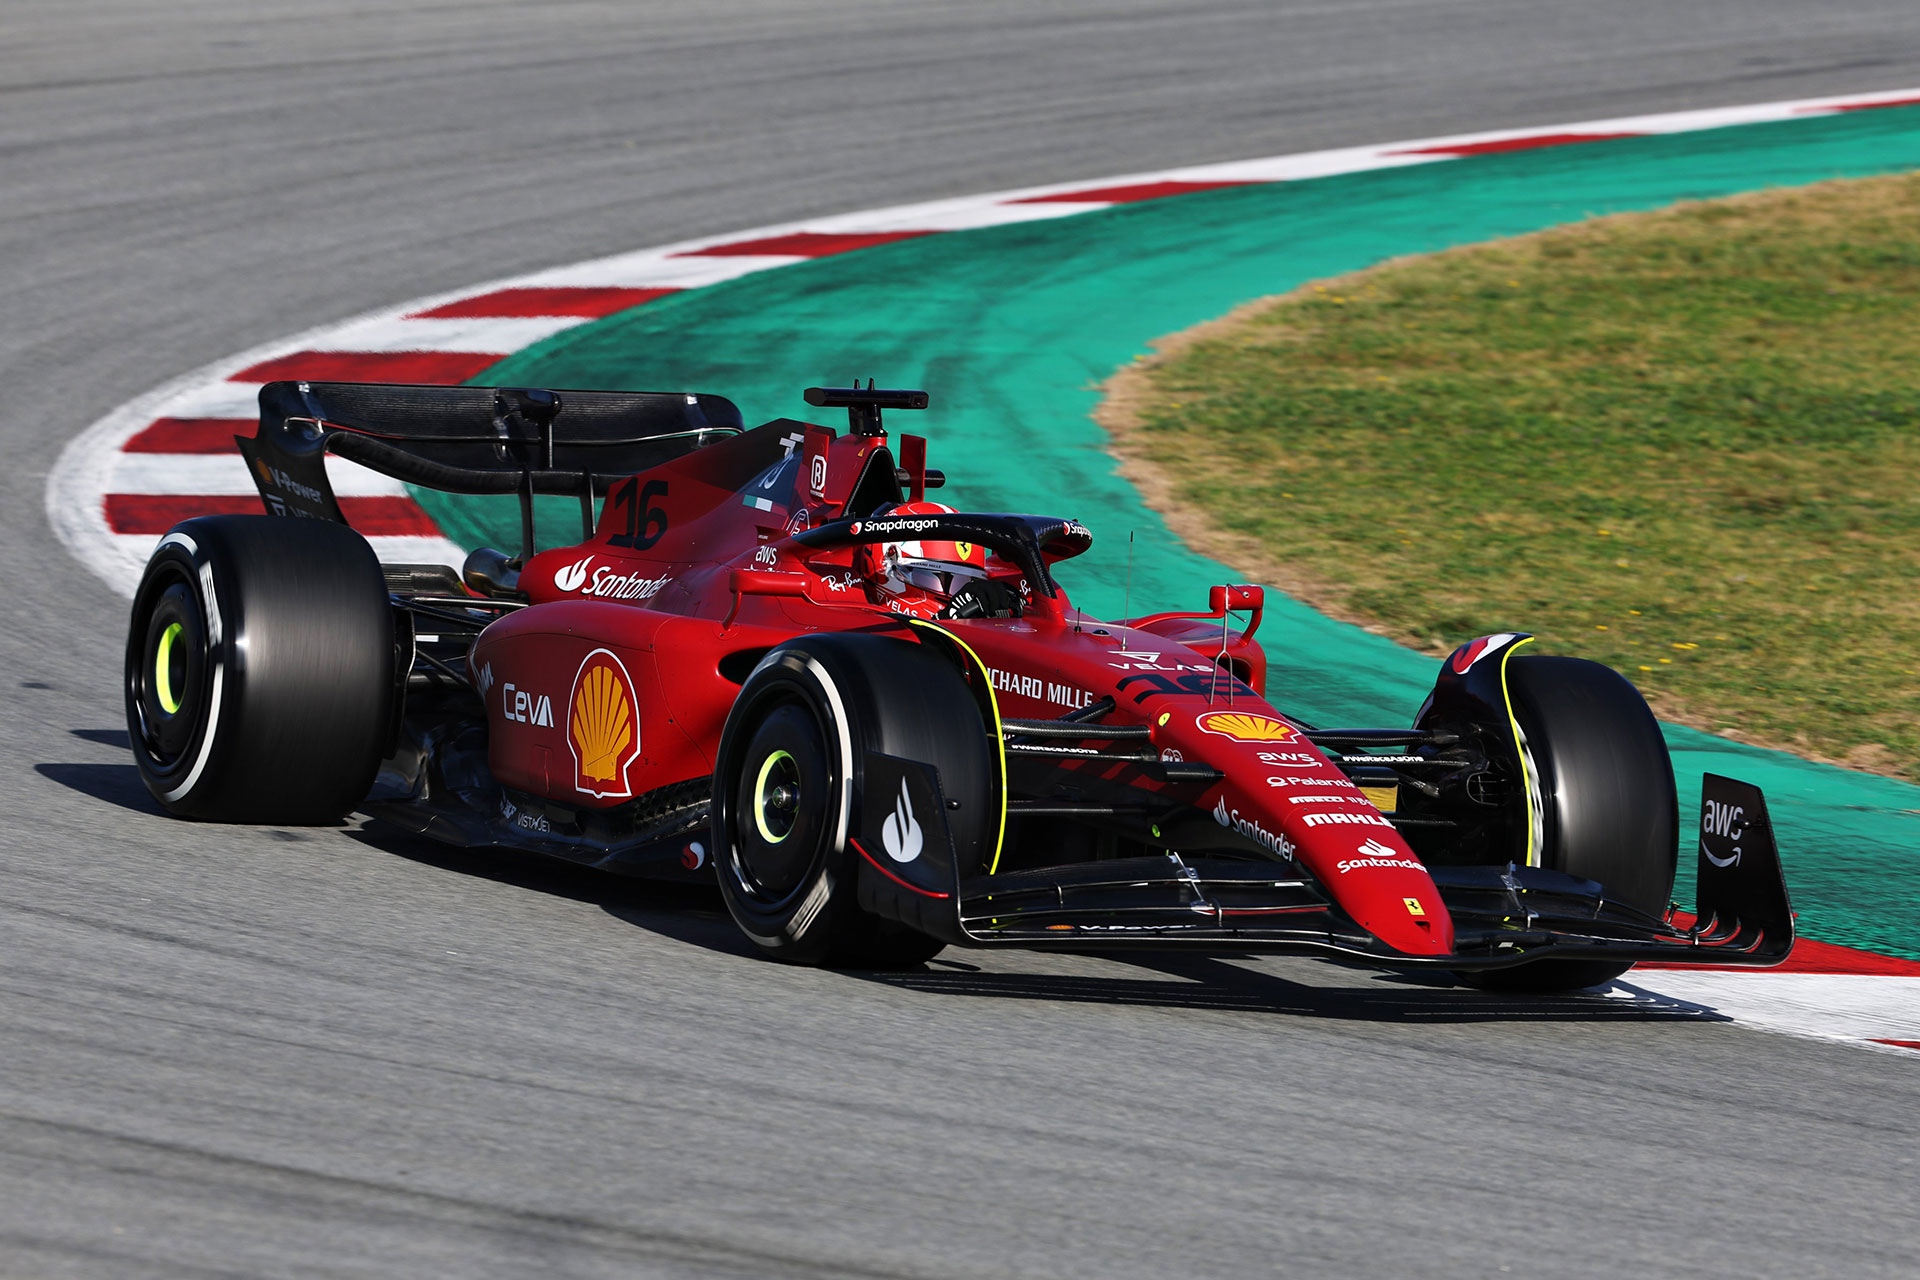 Ferrari, la marca más emblemática de autos en todo el mundo, sigue apostando a la F1 y retrasando su entrada al mundo de los autos eléctricos